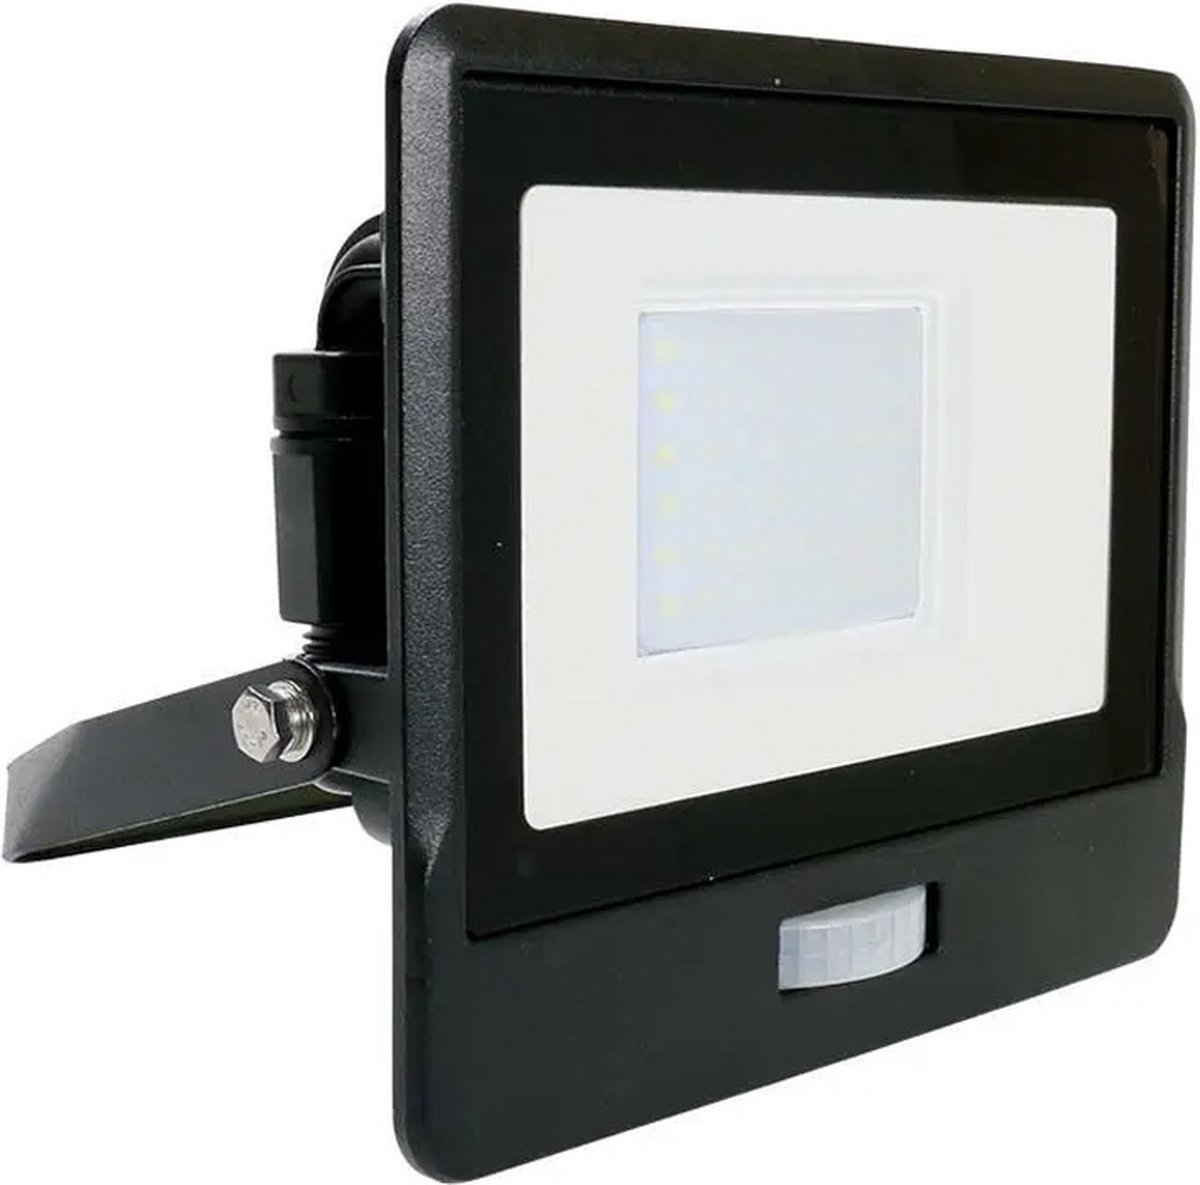 Projecteur LED mural noir avec détecteur de mouvement, conso. de 50W